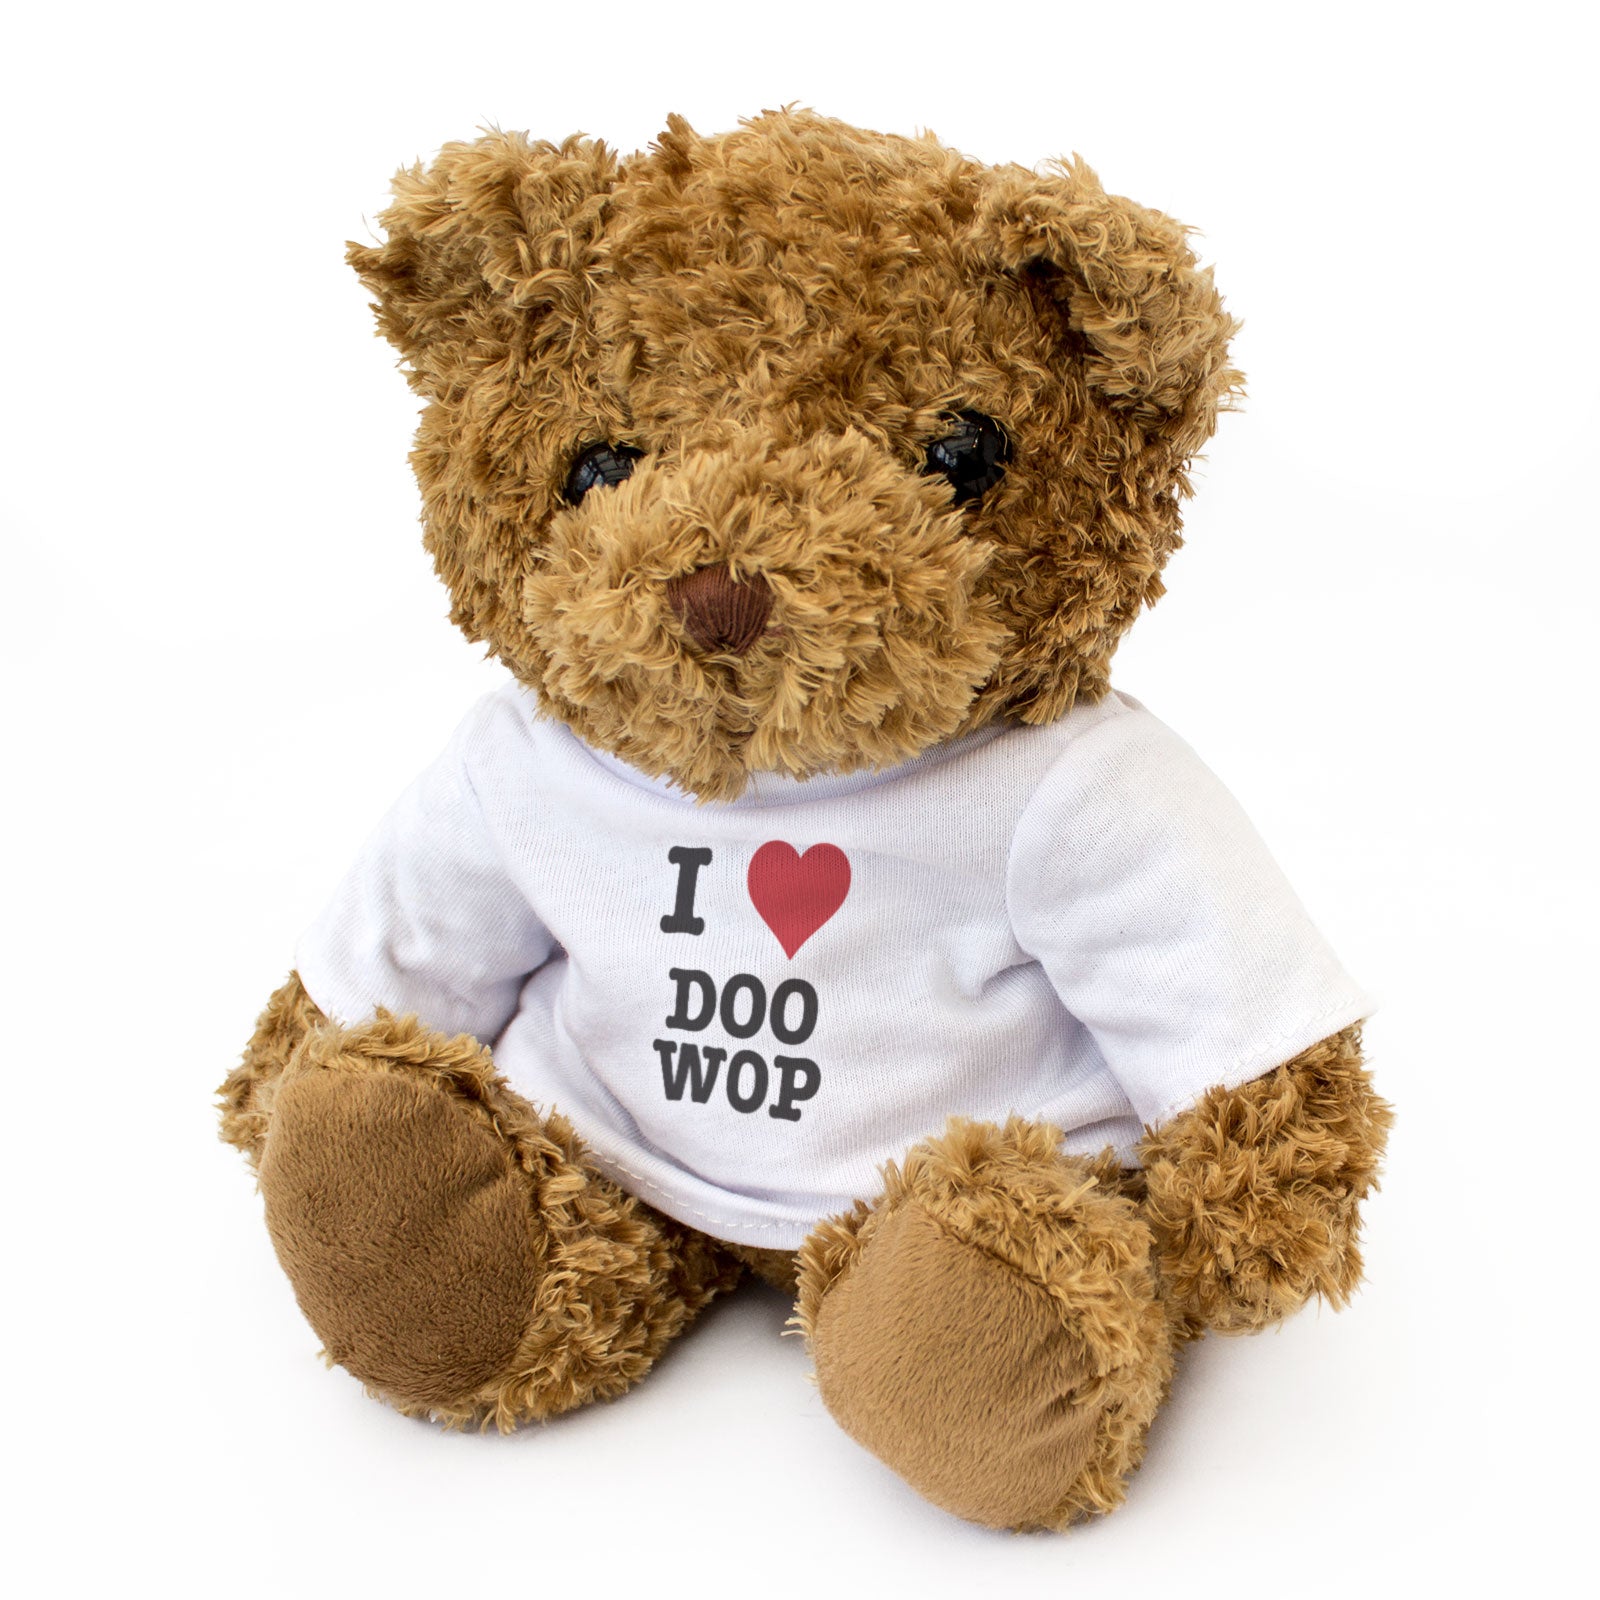 I Love Doo Wap - Teddy Bear